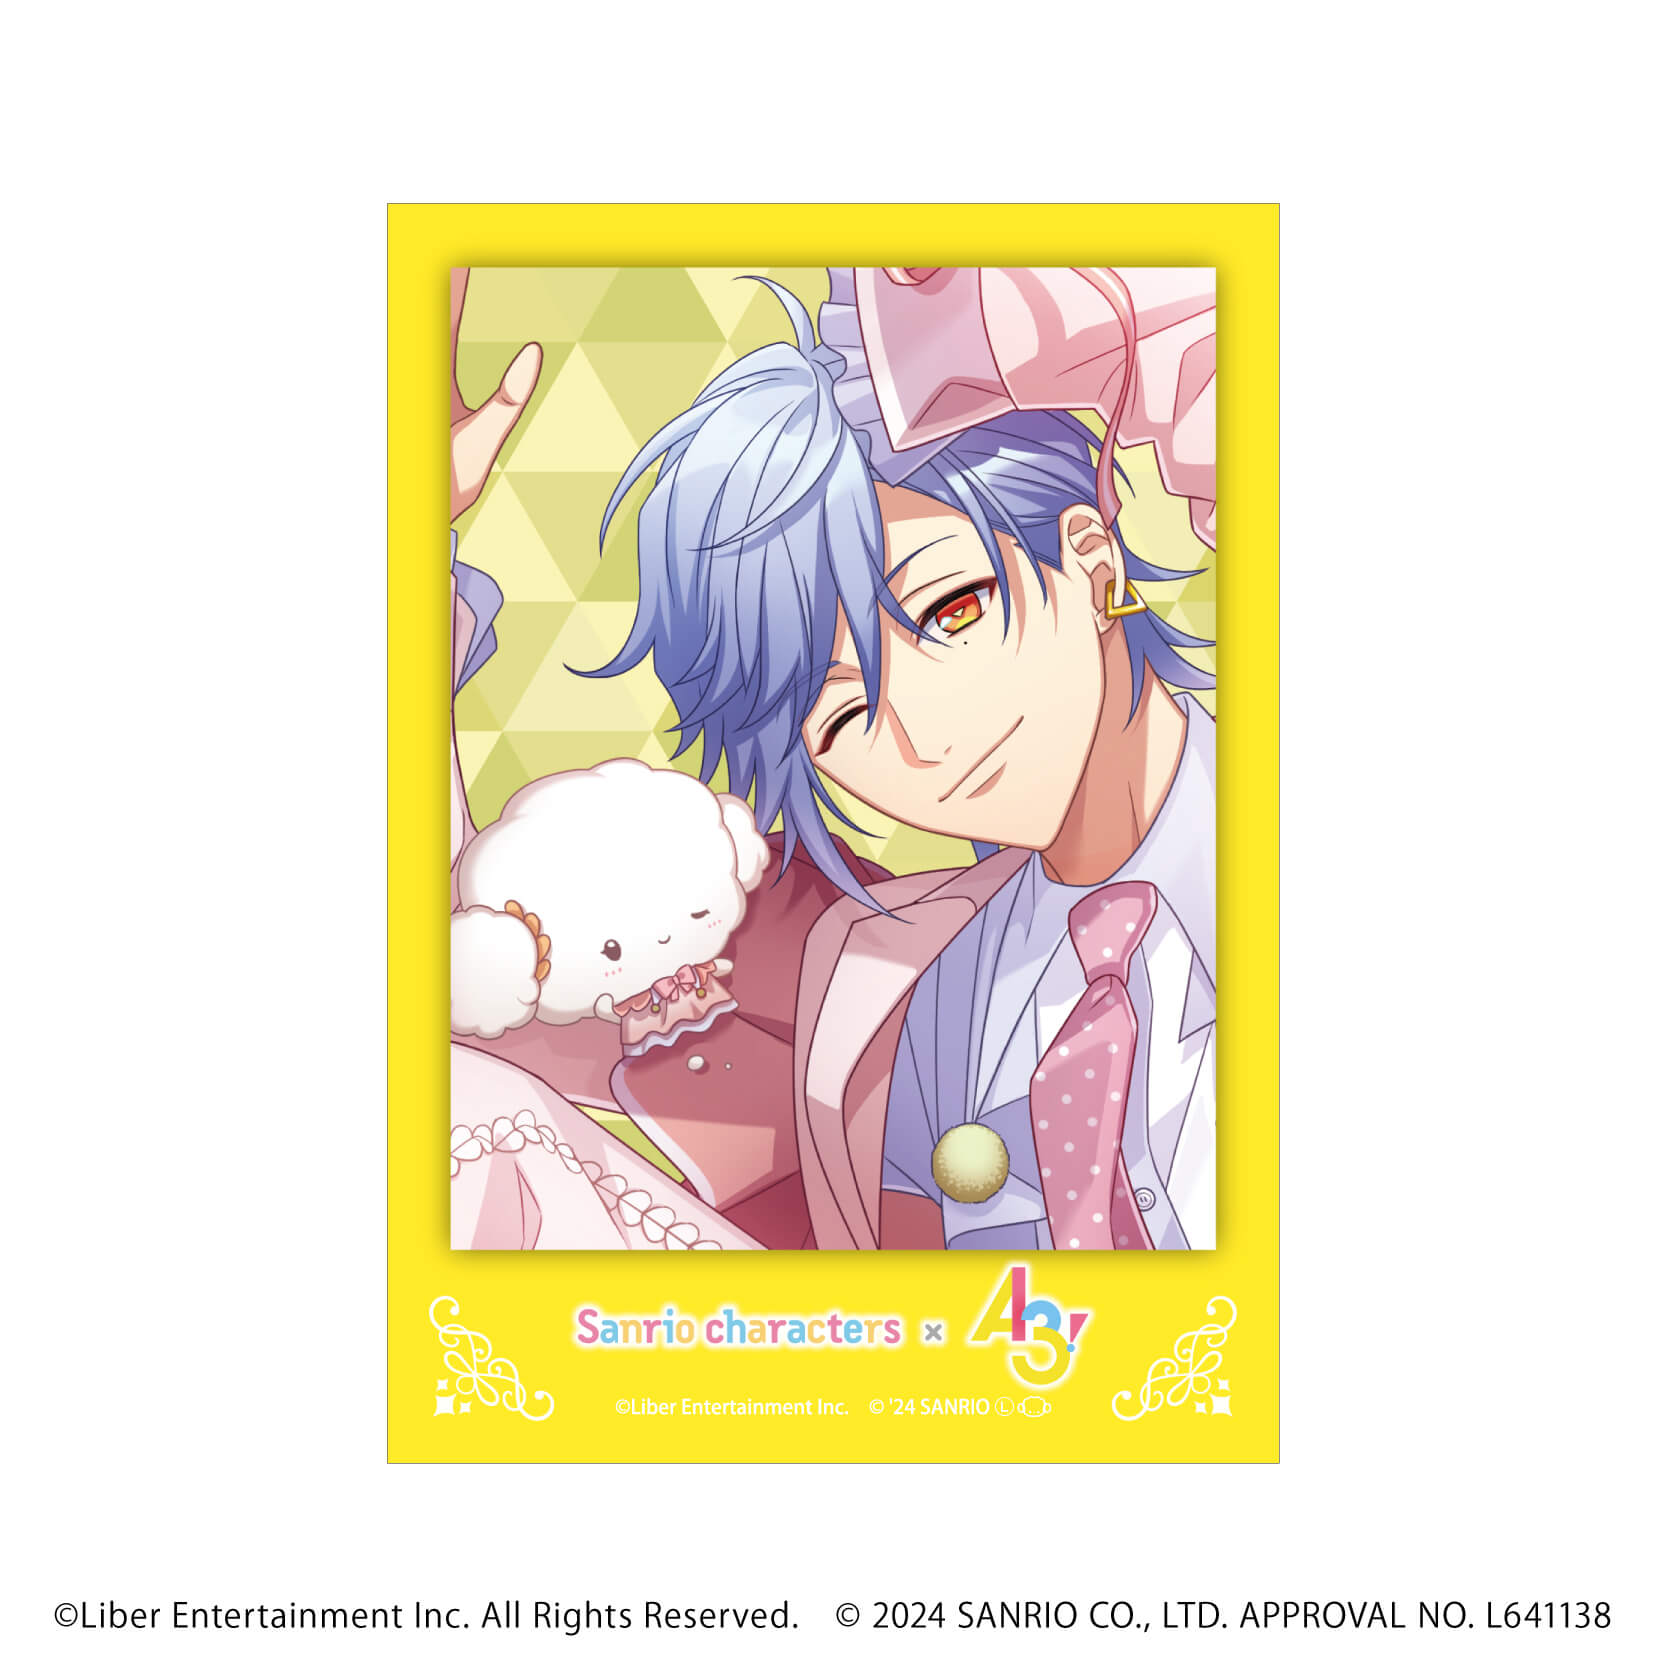 ミニフォト「A3!×Sanrio characters」04/コンプリートBOX(全8種)(公式イラスト)